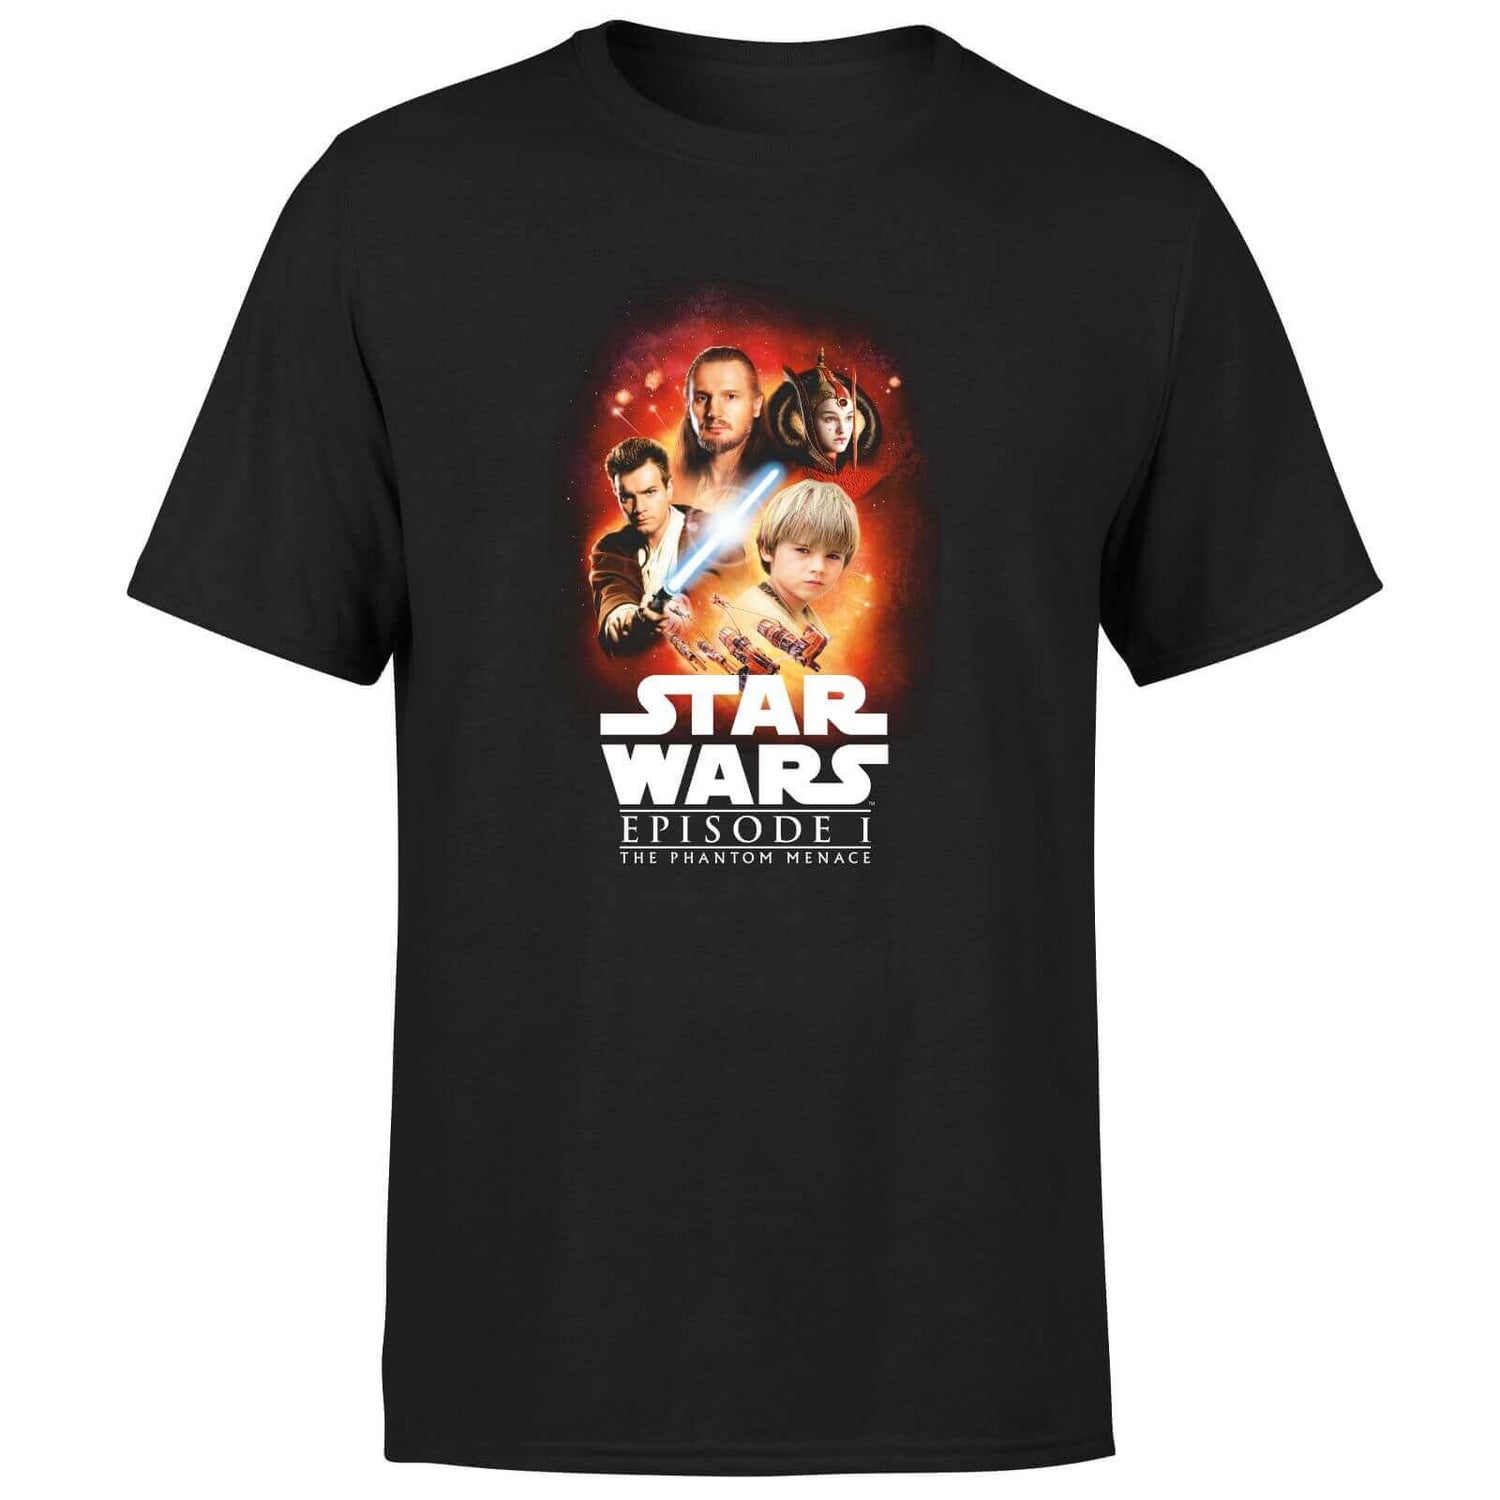 Star Wars The Phantom Menace Unisex T-Shirt - Black